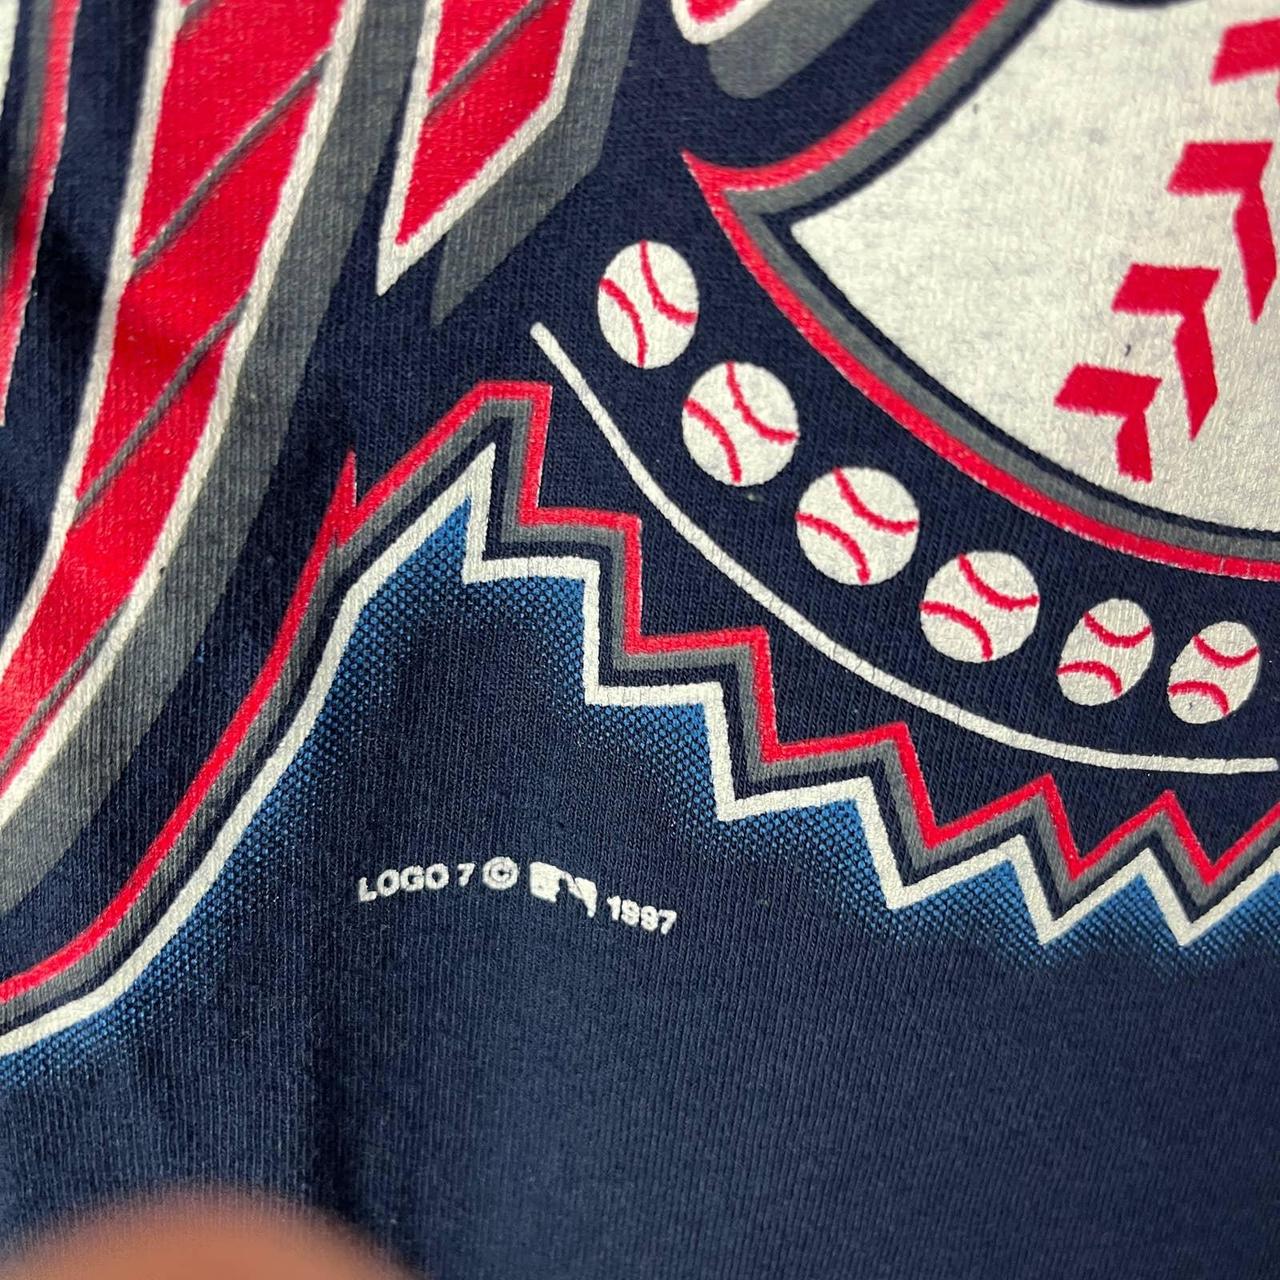 Vintage 90's Cleveland Indians t shirt PADSHOPS PADSHOPS